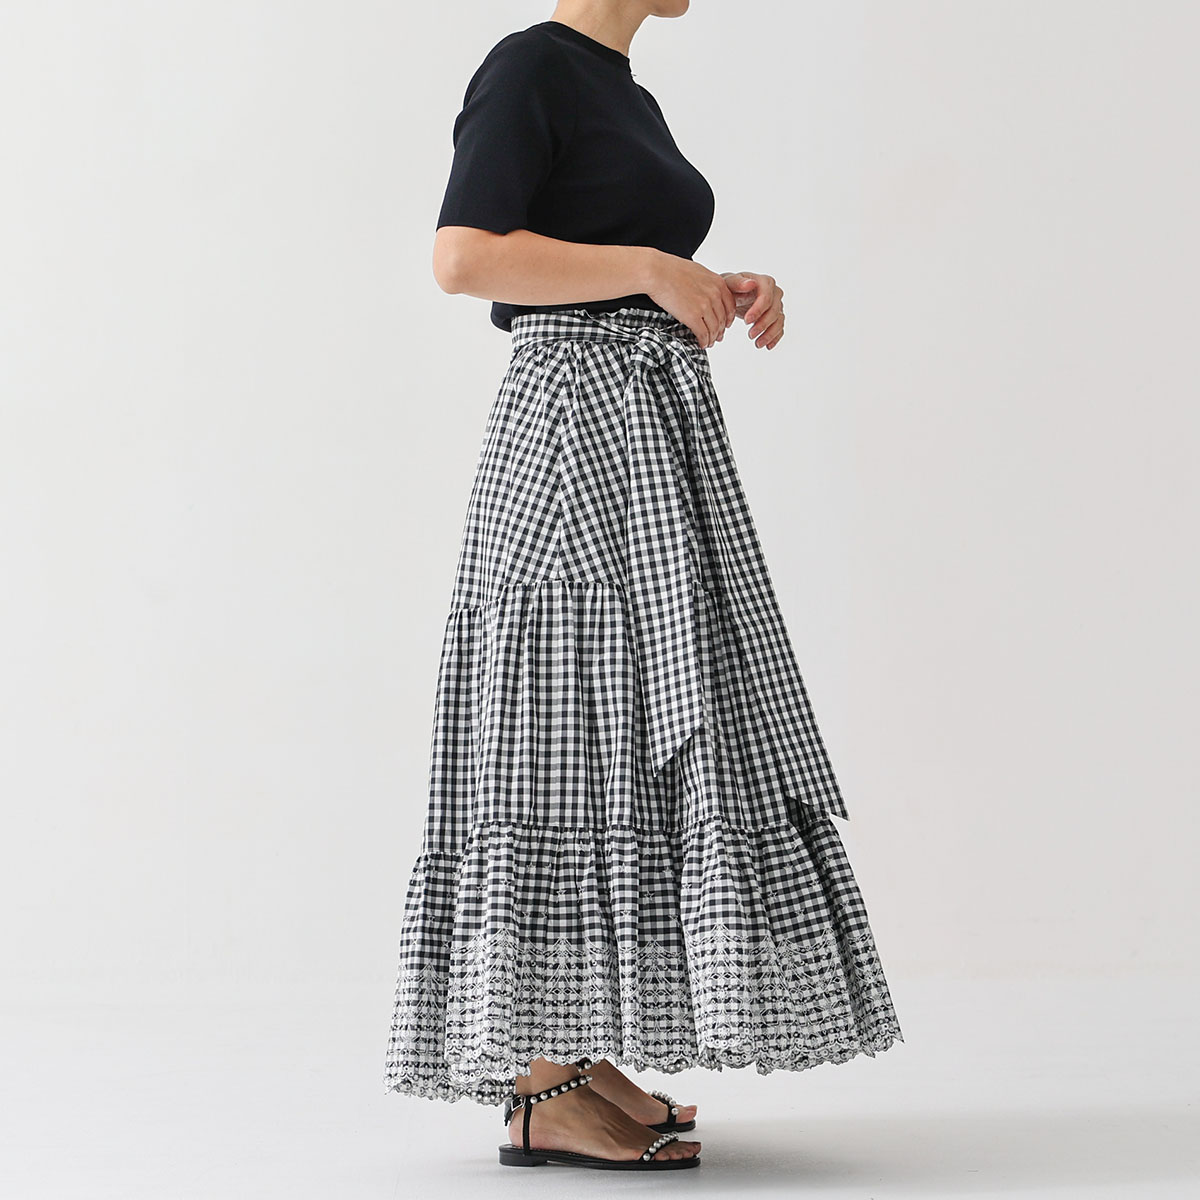 『Stella scallop』 tiered skirt WHITE×BLACK画像